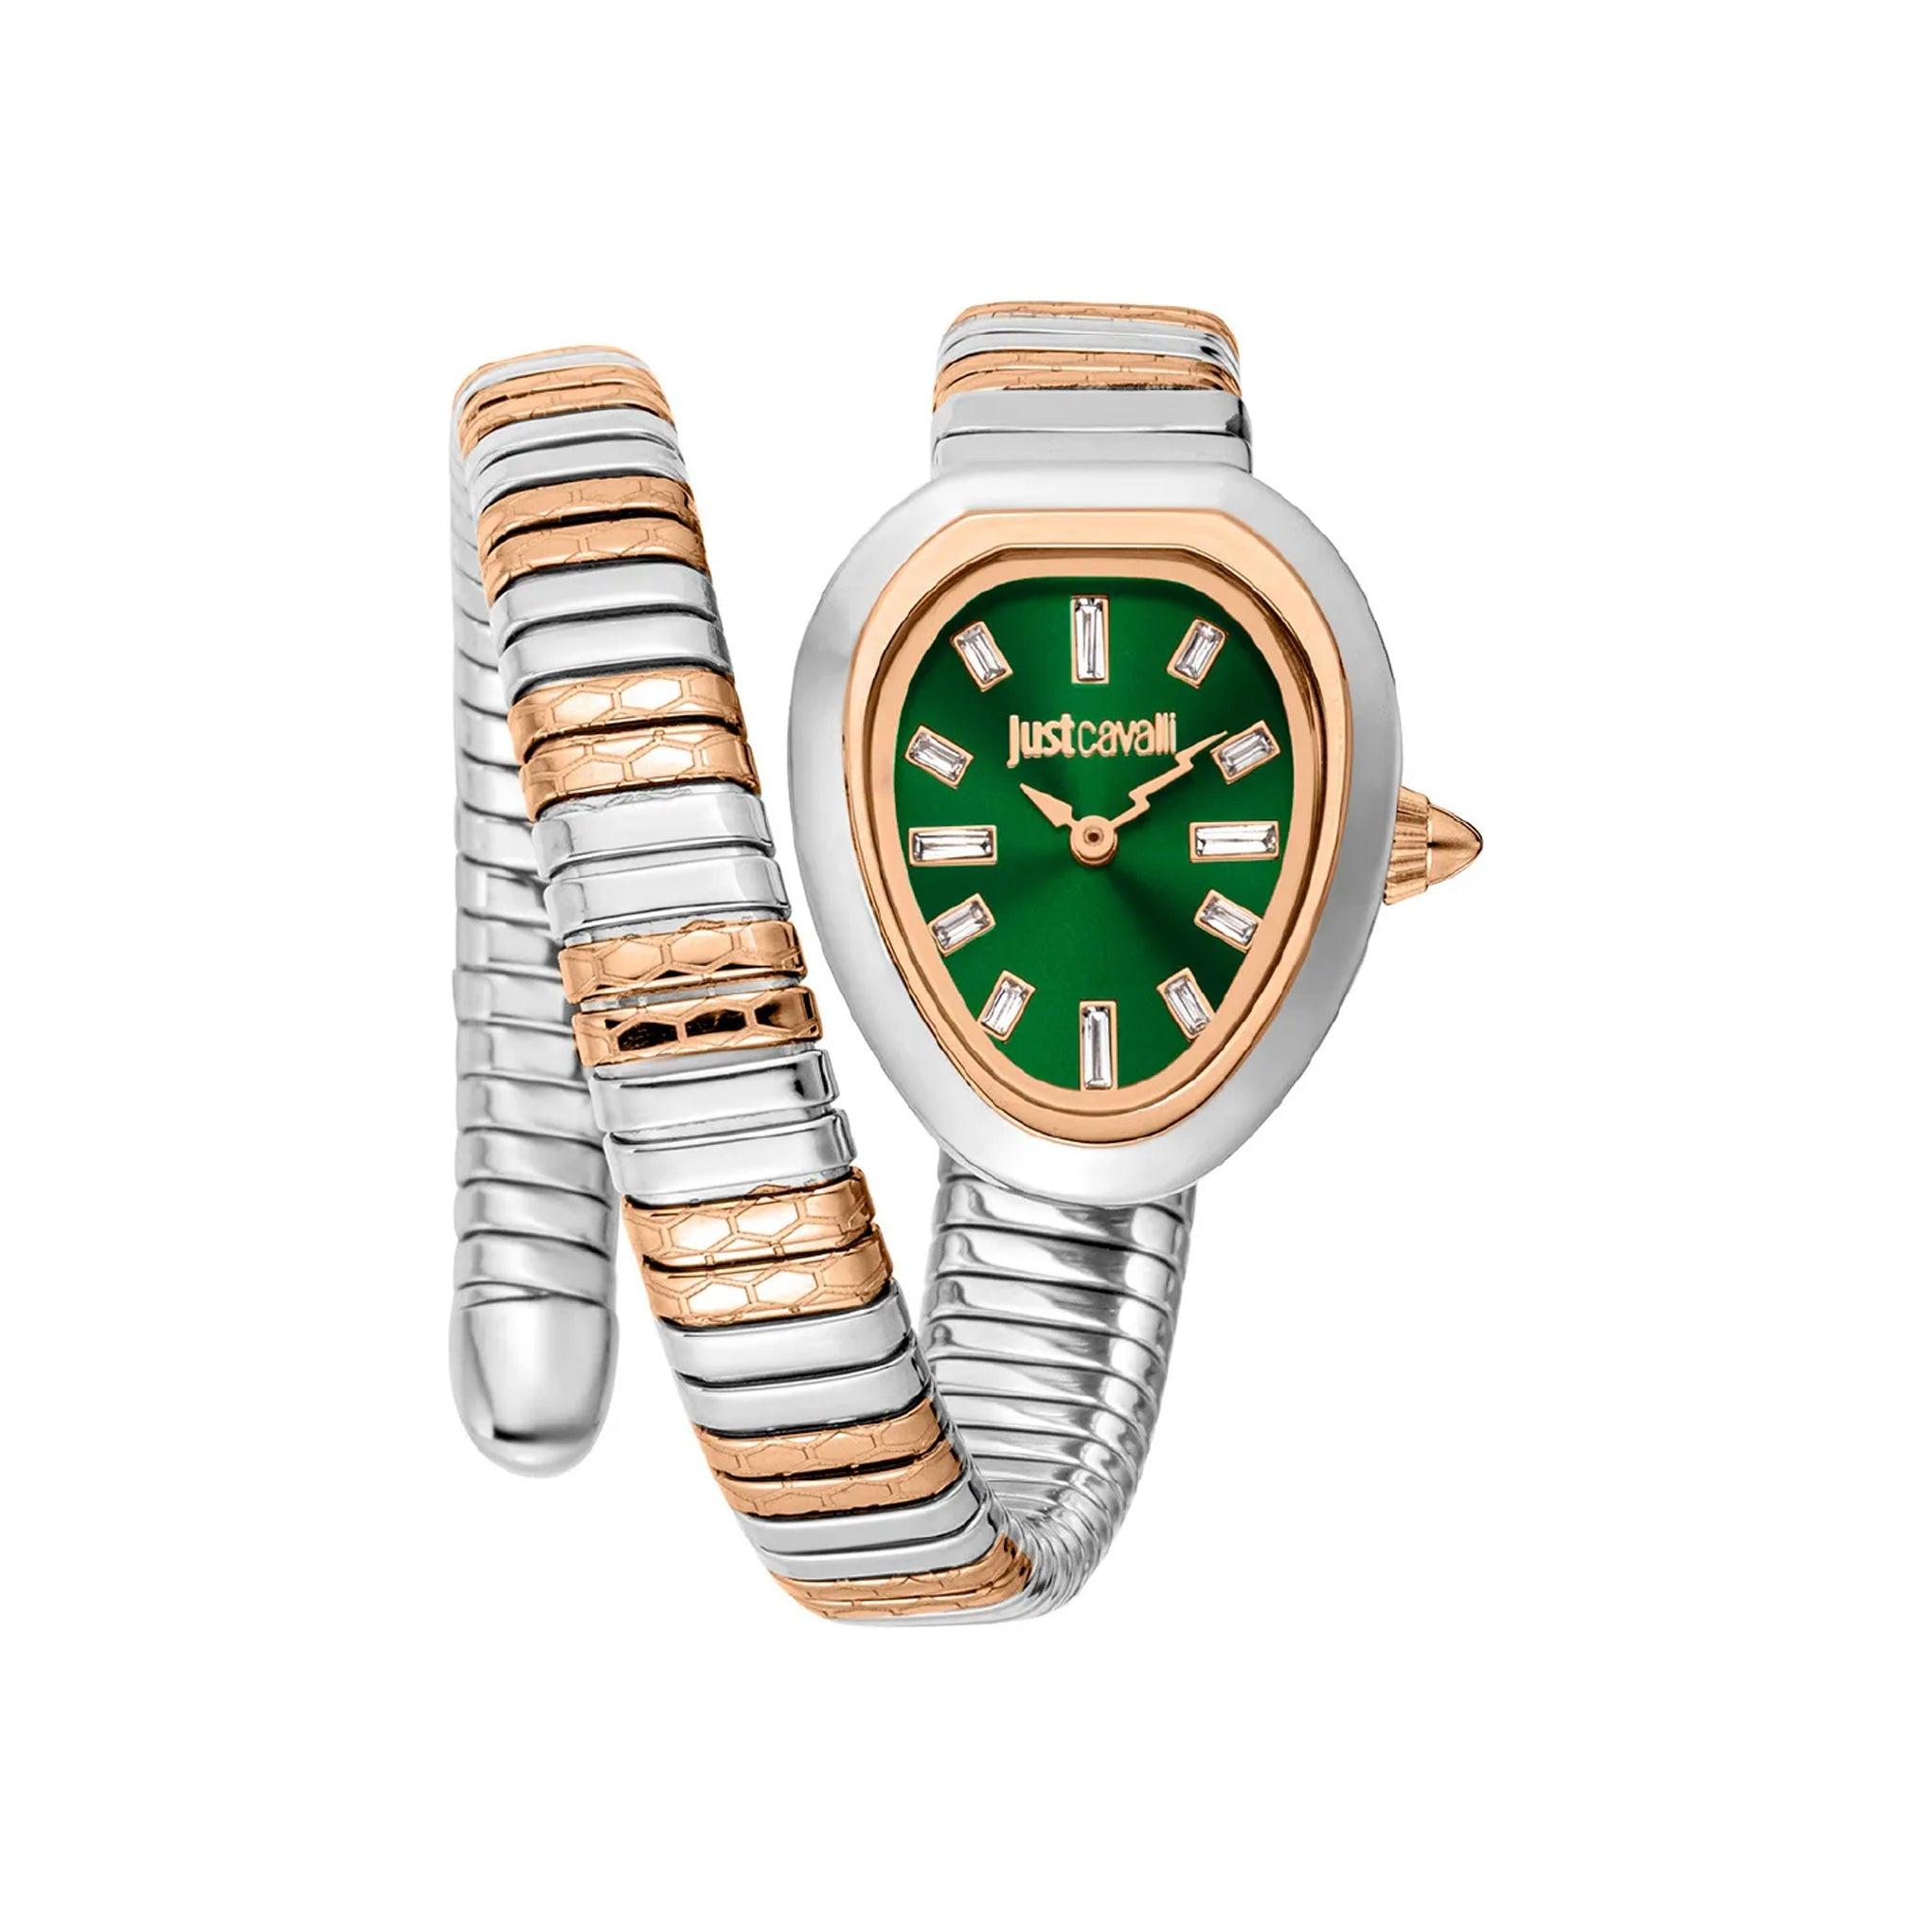 ساعة يد نسائية بشكل ثعبان - ذهبي وردي - بحزام معدني مقاوم للصدأ جست كافالي Just Cavalli Women's Aversa Two Tones Quartz Watch